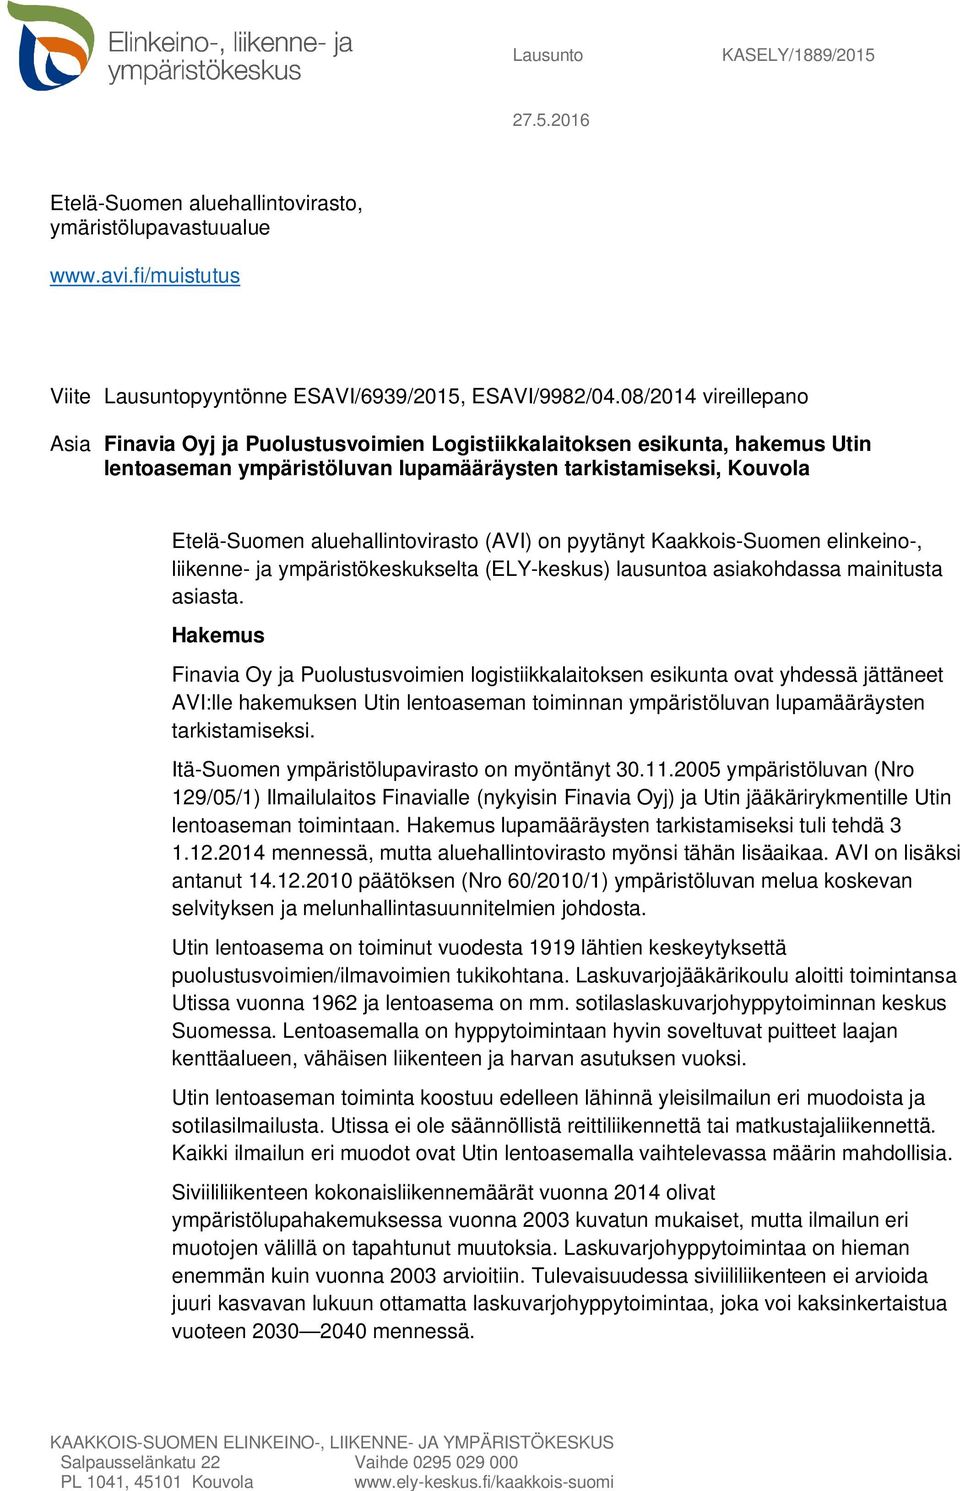 aluehallintovirasto (AVI) on pyytänyt Kaakkois-Suomen elinkeino-, liikenne- ja ympäristökeskukselta (ELY-keskus) lausuntoa asiakohdassa mainitusta asiasta.